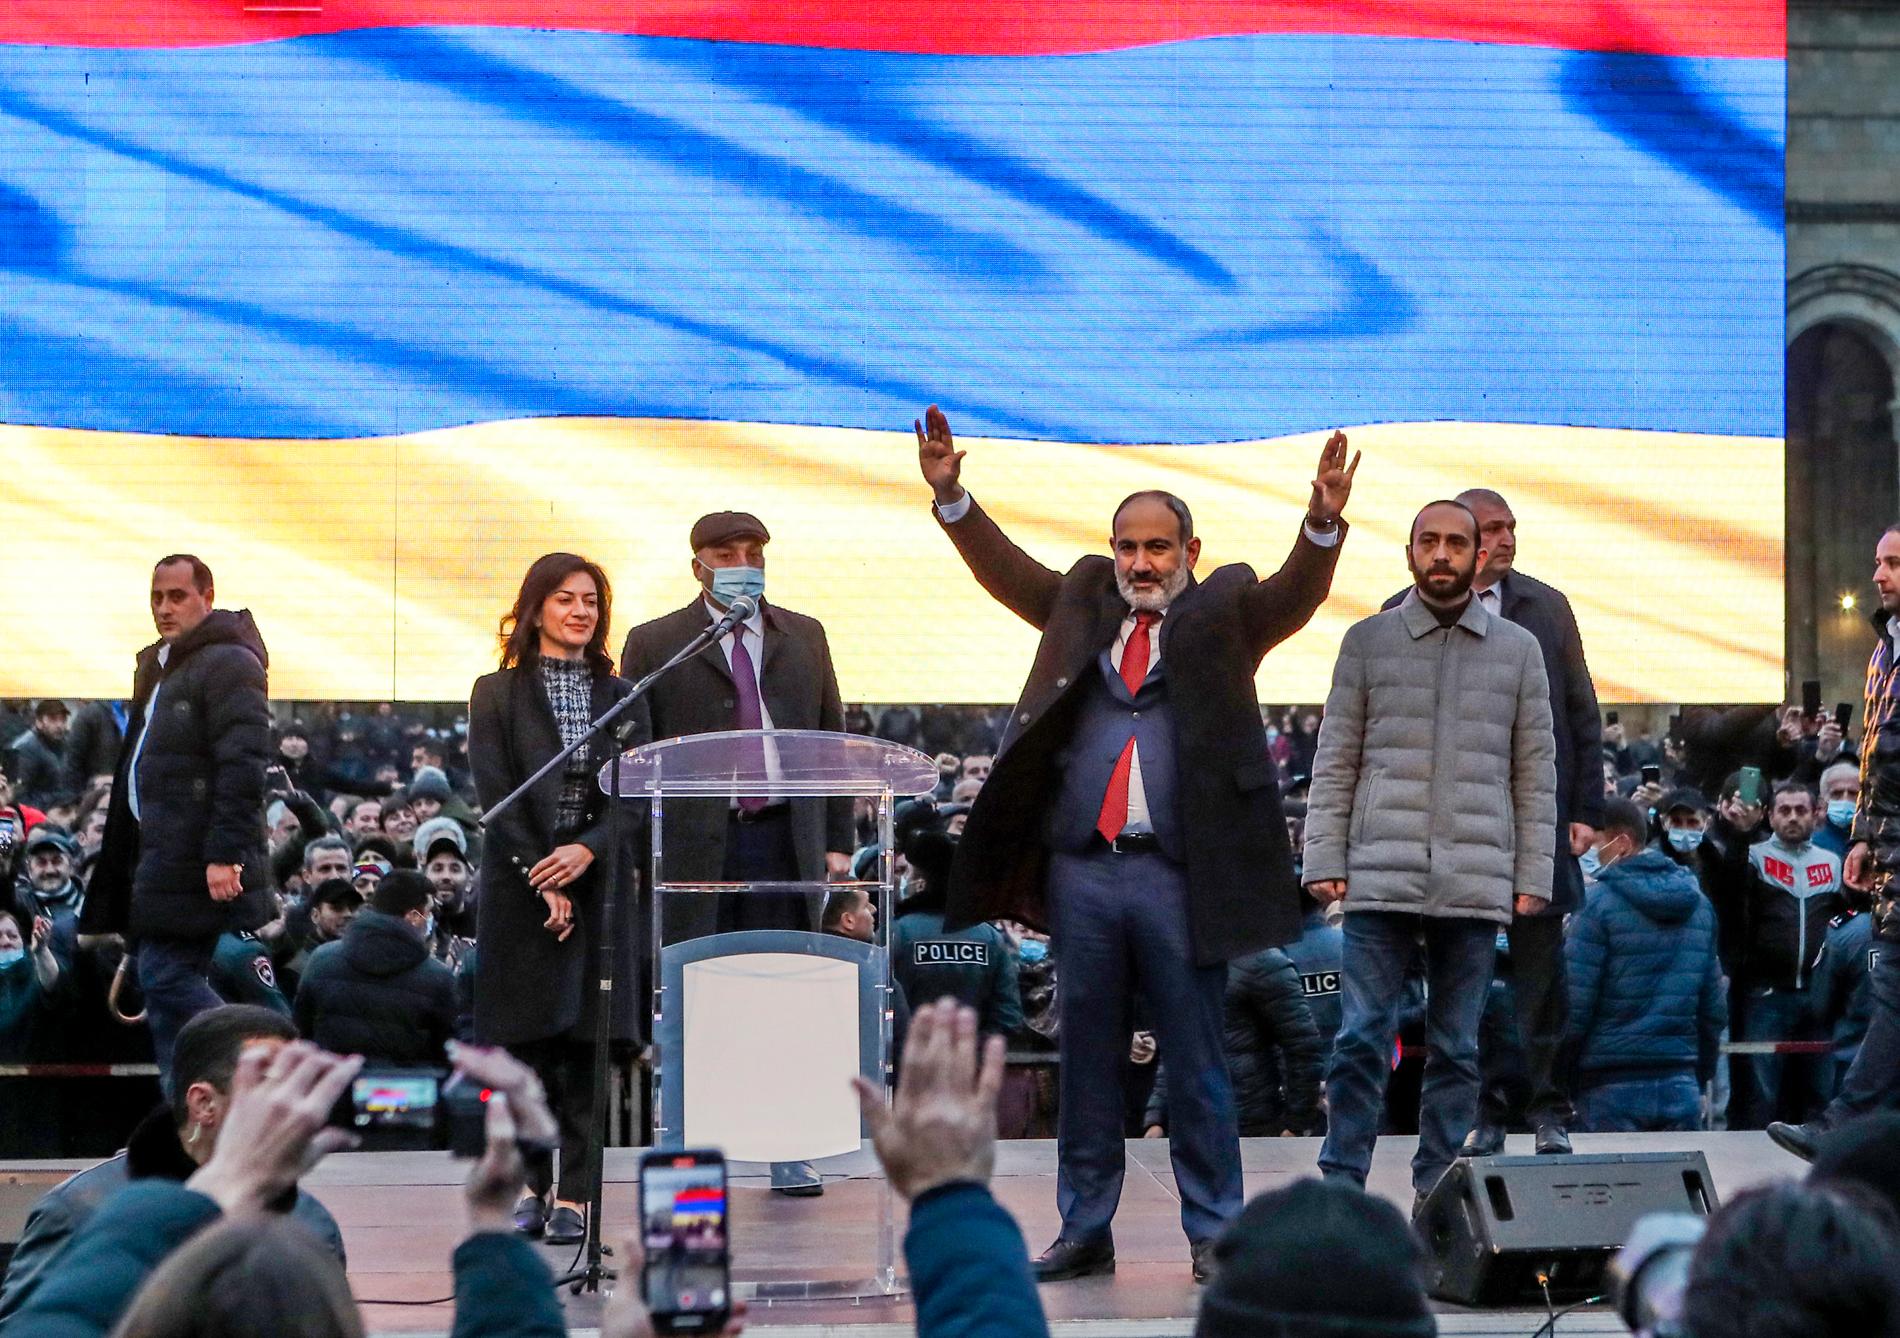 Armeniens premiärminister Nikol Pasjinian möter sina anhängare under ett massmöte i huvudstaden Jerevan på måndagen.